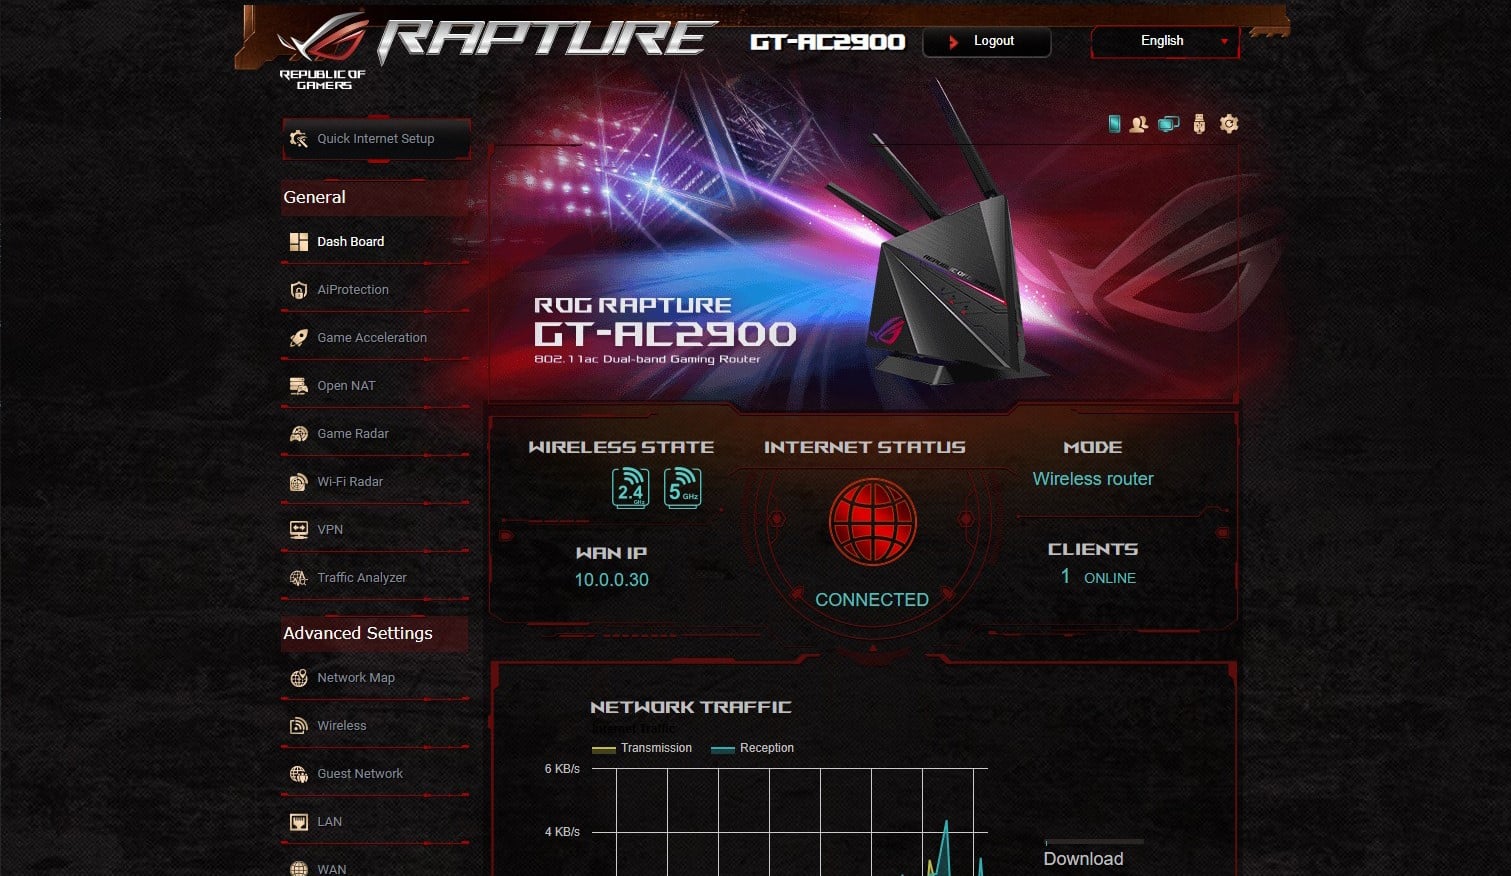 ROG Rapture GT-AC2900